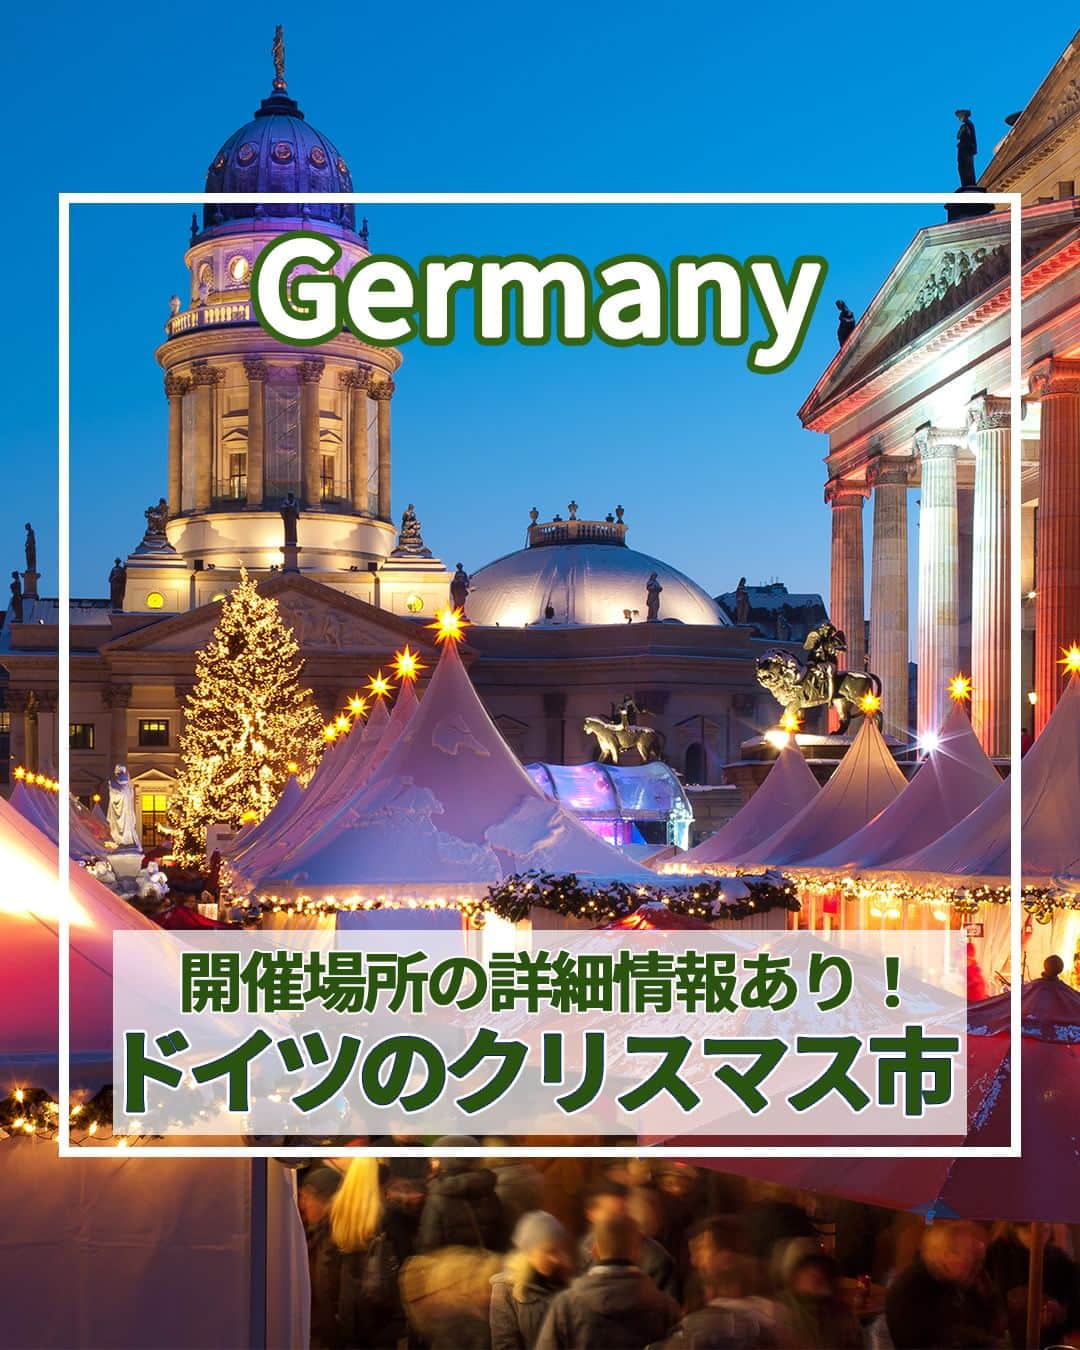 旅工房公式のインスタグラム：「＼これからの季節にぴったり✨✨／ #ドイツ #クリスマスマーケット  こんにちは！☺ 今回は12月に入りもうすぐクリスマス🎄ということで、クリスマスマーケットの本場ドイツのクリスマスマーケットを特集しました！  まだ今年の12月出発のドイツツアーも販売中✨ 今年のクリスマスをドイツで過ごすのはいかがでしょう？  次の海外旅行の参考になりますように＼(^o^)／ 💚  ━━━━━━━━━━━━━━━  📍シュツットガルト ドイツ３大クリスマスマーケットのひとつ！世界最大規模のクリスマスマーケットで、毎年注目が集まる各露店のディスプレイ競演が見所♪ 開催場所：シラー広場、カールス広場など  📍ニュルンベルク 城壁に囲まれた旧市街がクリスマス一色に包まれるます♪ 中世の面影を感じさせるノスタルジックな雰囲気がロマンティック！ 開催場所：ハウプトマルクト広場、ハンス・ザックス広場など  📍ドレスデン 世界最古のクリスマスマーケットとして有名なスポット！ 様々な歴史的建造物が美しく厳かな雰囲気をより一層引き立てます。 開催場所：アルトマルクト広場、ノイマルクト広場など  📍ミュンヘン 人気の観光スポットである市庁舎の仕掛け時計がクリスマスツリーの灯りに照らされます♪ ファンタジーな雰囲気を思いっきり楽しんで◎ 開催場所：マリエン広場など  📍ベルリン 世界で一番マーケットの種類が多いことで有名！ ベルリンらしさ溢れるユニークなマーケットが市内の至る所に出現します。 開催場所：ジャンダルメンマルクトなど  📍ケルン この季節だけ出現するクリスマスツリーと、それを見守るかのようにそびえ立つ大聖堂のコントラストは圧巻！ 開催場所：ケルン大聖堂前、ノイマルクトなど  この記事を読んで、ぜひ参考にしてみて下さい＼(^o^)／💛  ━━━━━━━━━━━━━━━  �  #旅工房 #ドイツクリスマスマーケット #ドイツグルメ #ドイツ旅行 #ドイツ女子旅 #クリスマス市 #シュッツガルド #ドイツスイーツ #ニュルンベルク #ドレスデン #ミュンヘン #ベルリン #ホットワイン #ケルン #ケルン大聖堂 #ボケリア市場 #マリエン広場 #クリスマス #クリスマス旅行 #ヨーロッパ旅行 #旅行好きな人と繋がりたい #海外旅行準備 #旅好き女子 #妄想旅行 #海外旅行行きたい #海外旅行計画 #旅スタグラム #海外一人旅」